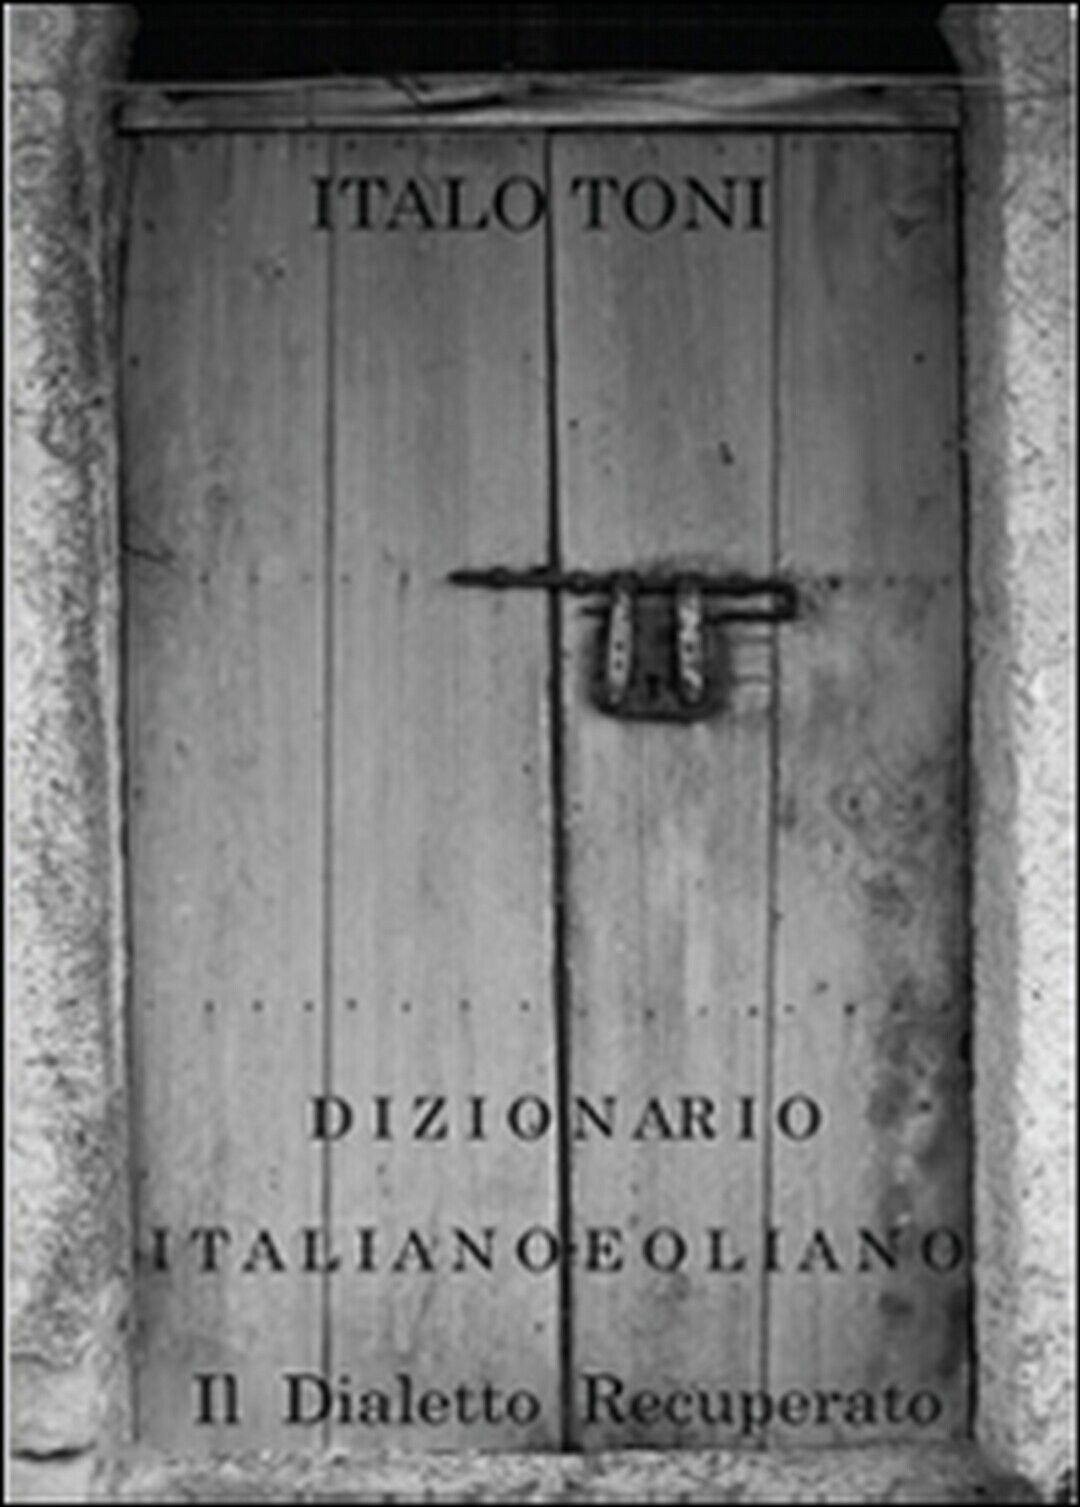 Dizionario italiano-eoliano  di Italo Toni,  2015,  Youcanprint